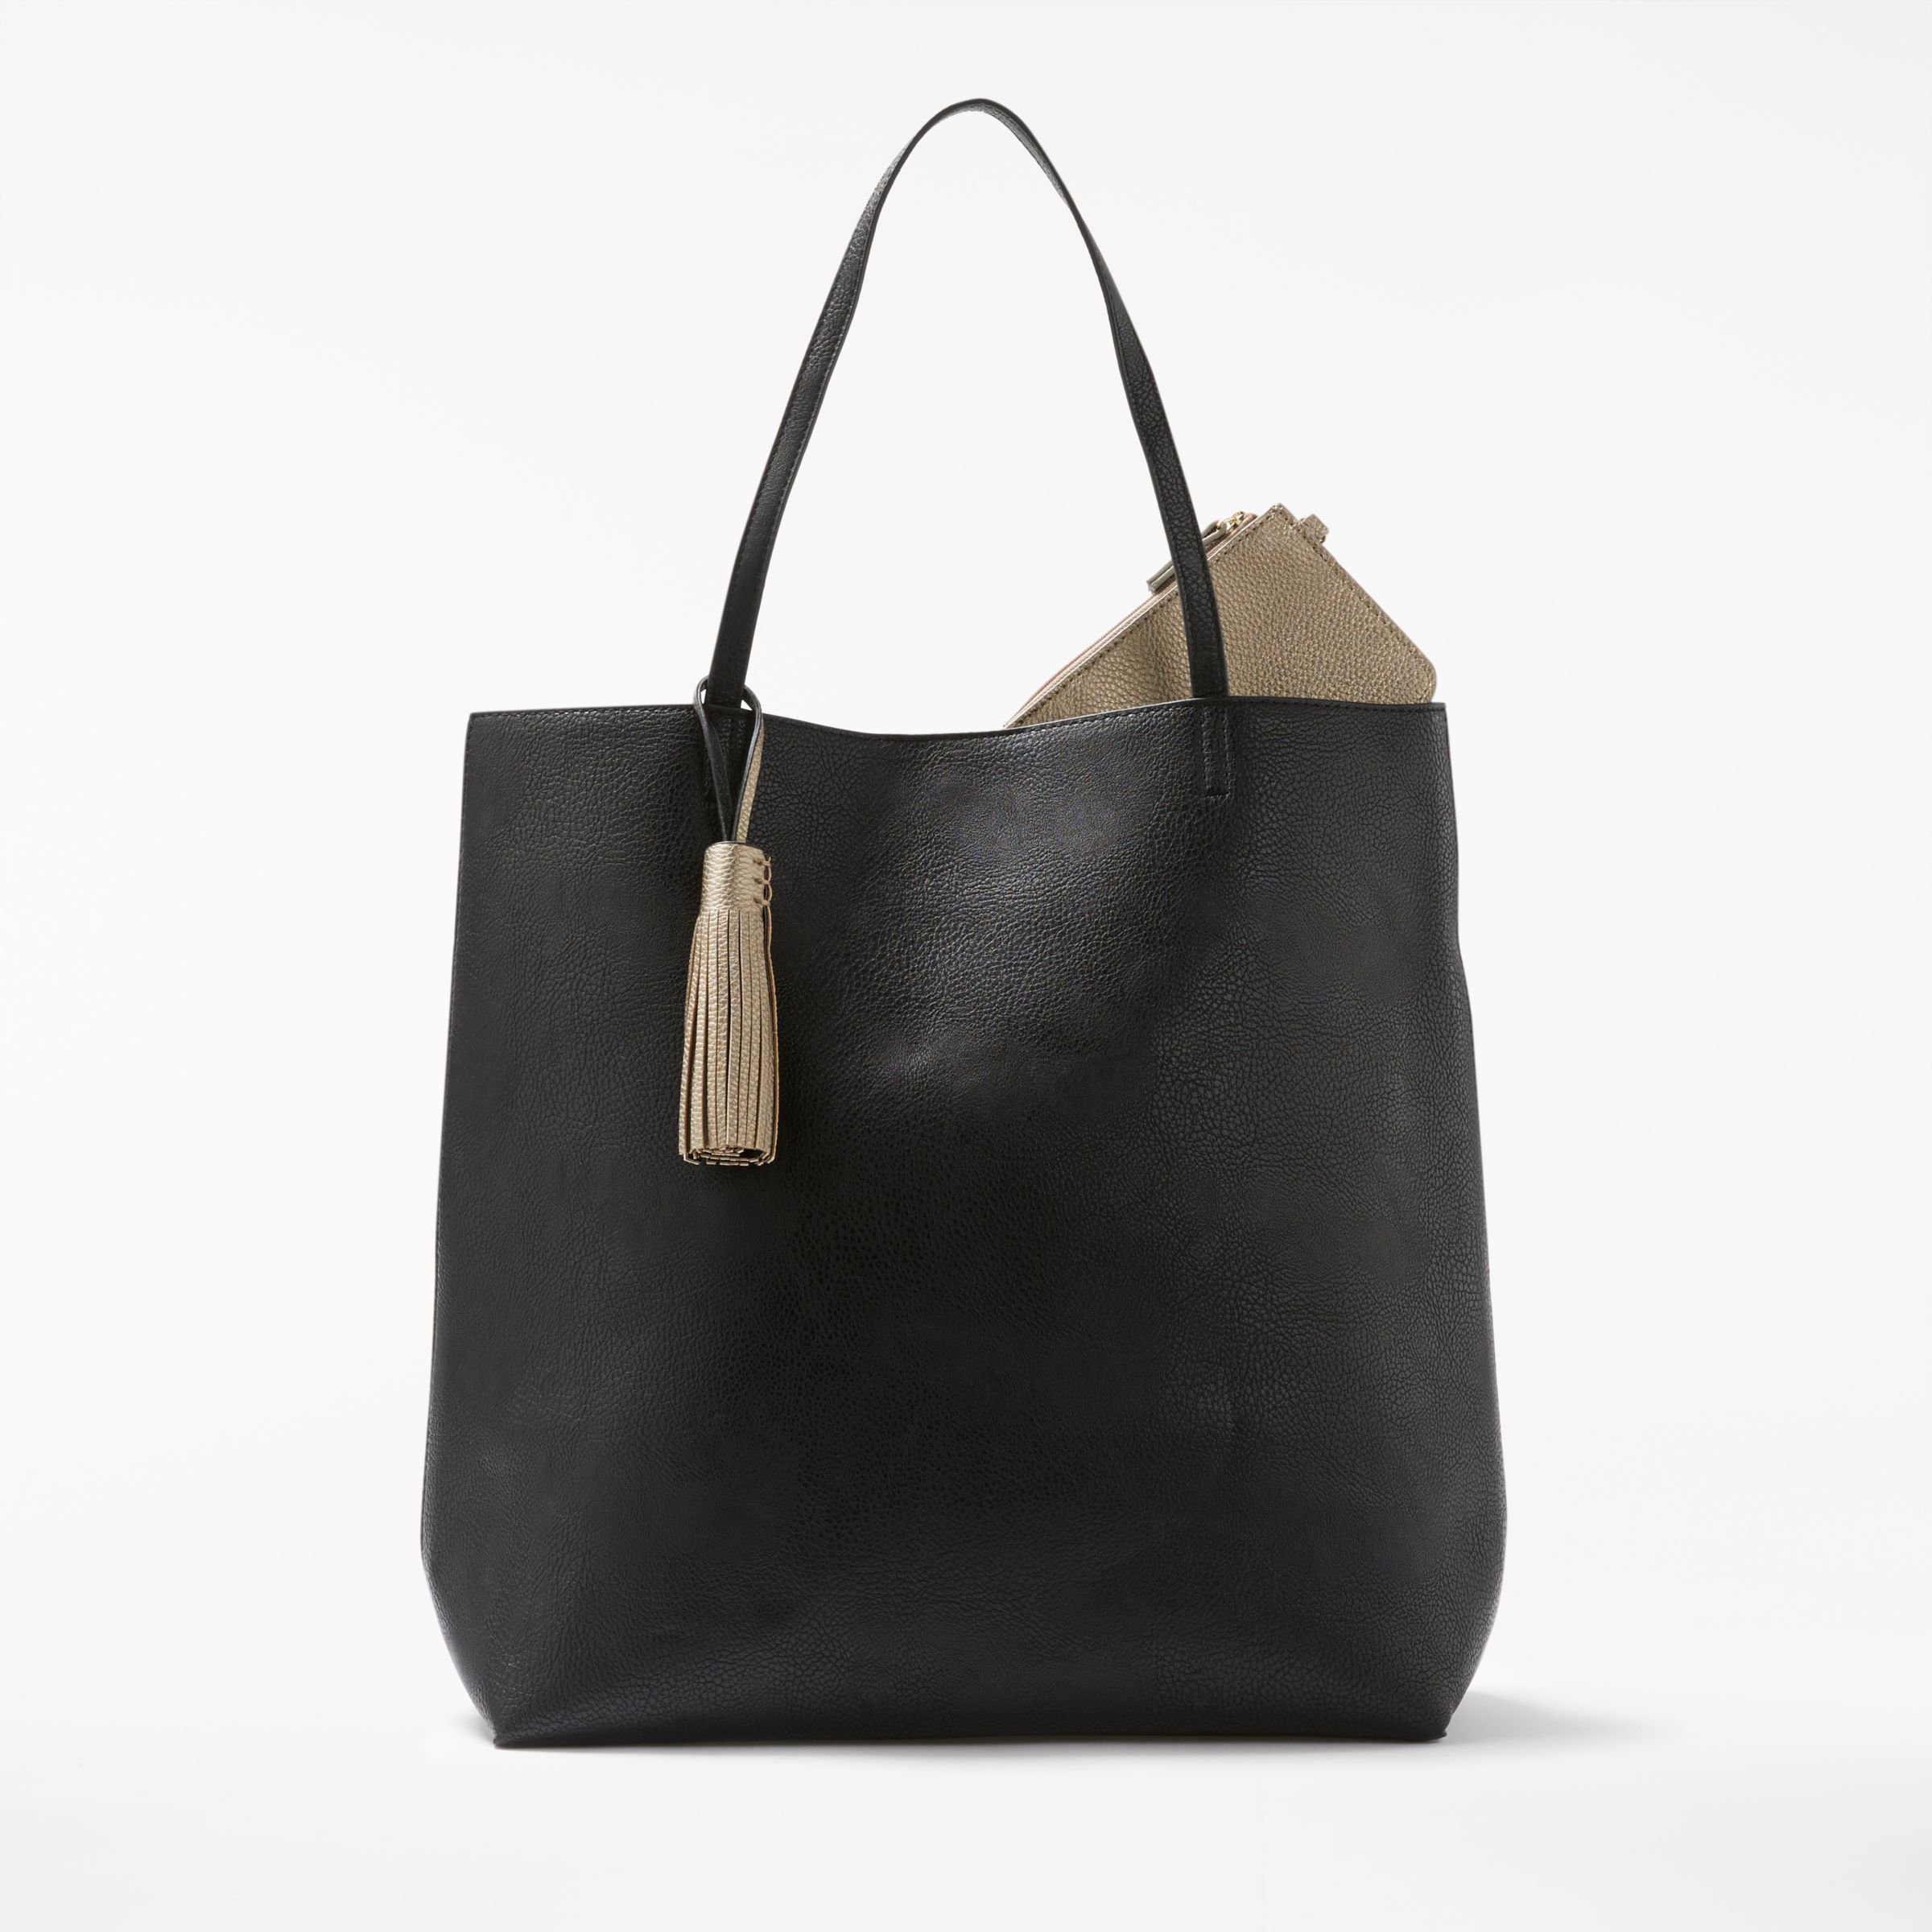 John Lewis & Partners Tia Large Reversible Tote Bag, Black/Pewter